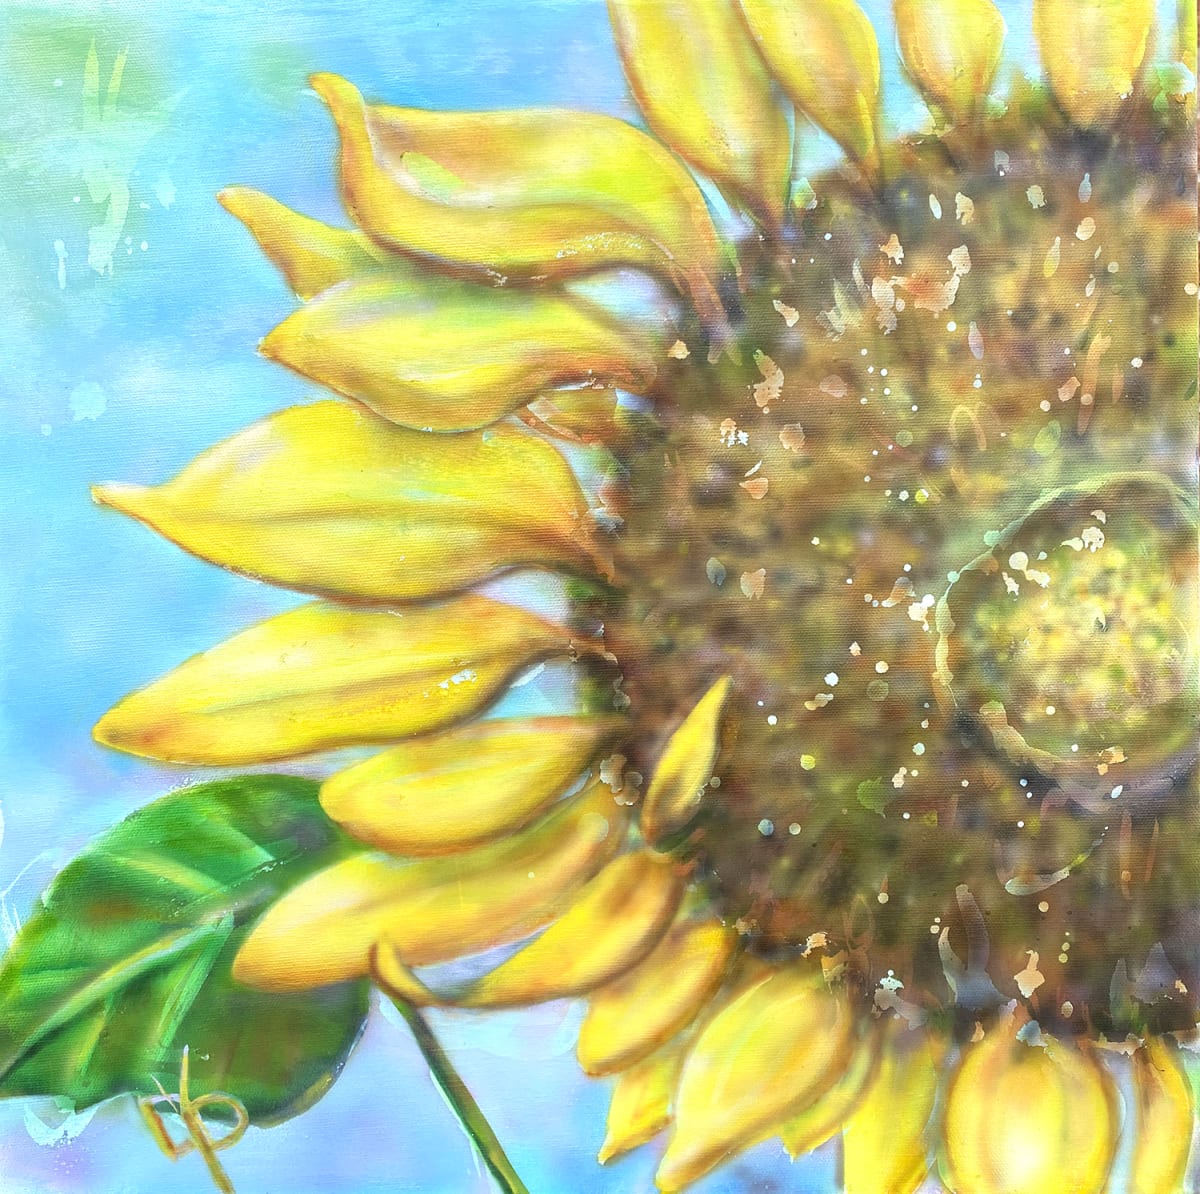 Summer Golds: Sunflower by Delphine Peller   Image: Summer Golds: Sunflower